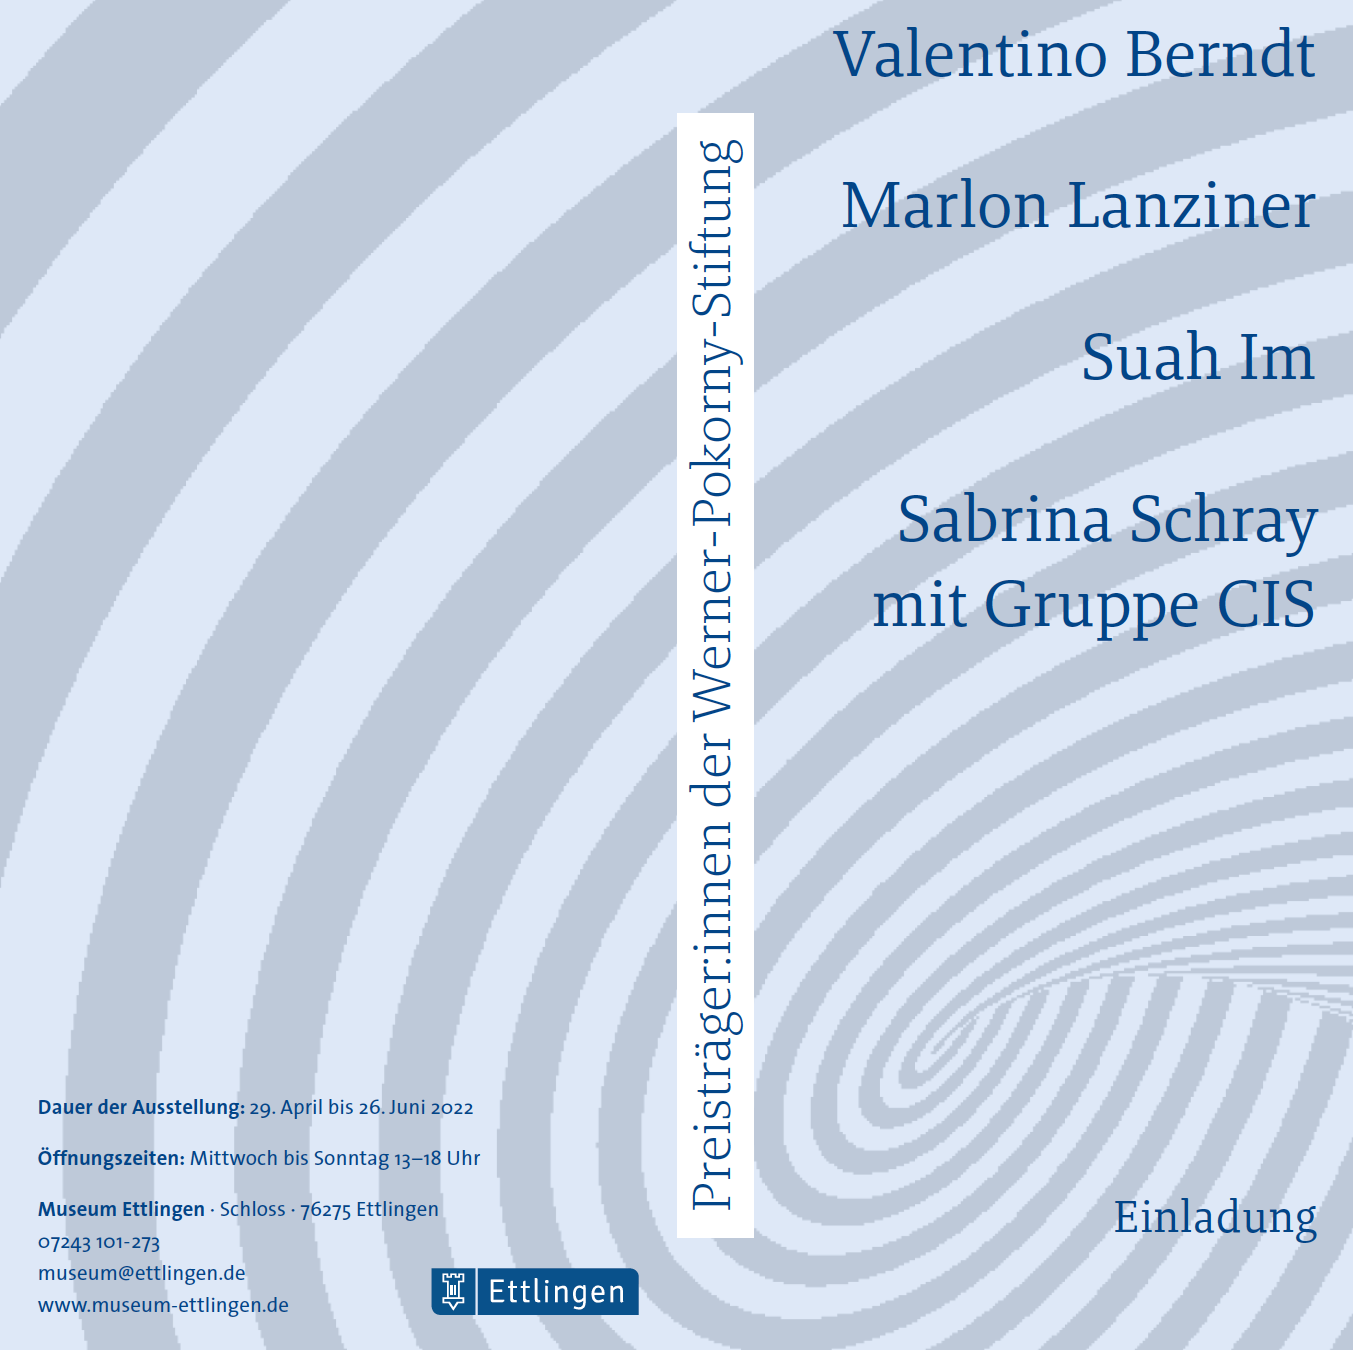 Ausstellung der Preisträger*innen der Werner-Pokorny-Stiftung – Valentino Berndt, Marlon Lanziner, Suah Im, Sabrina Schray